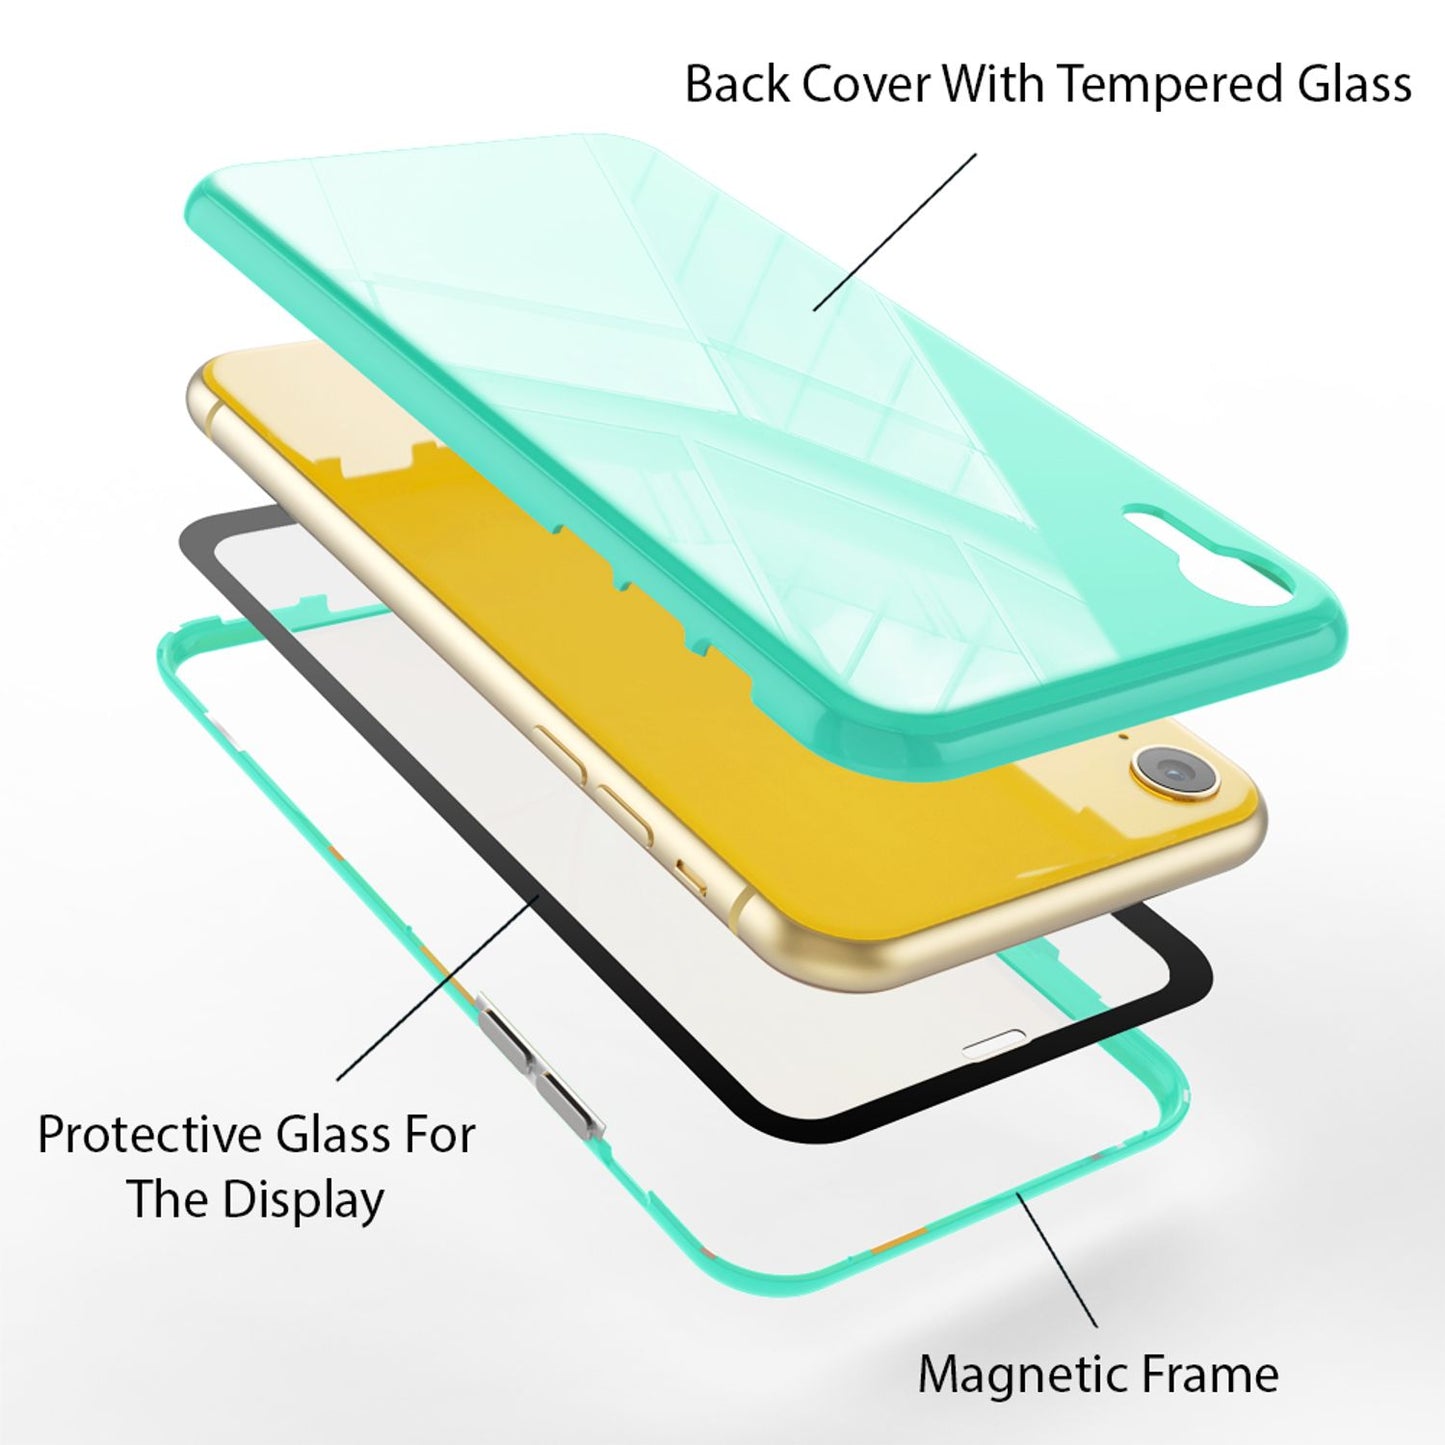 NALIA 360° Magnet Hülle für iPhone XR, Slim Hard Case Cover mit Display Schutz